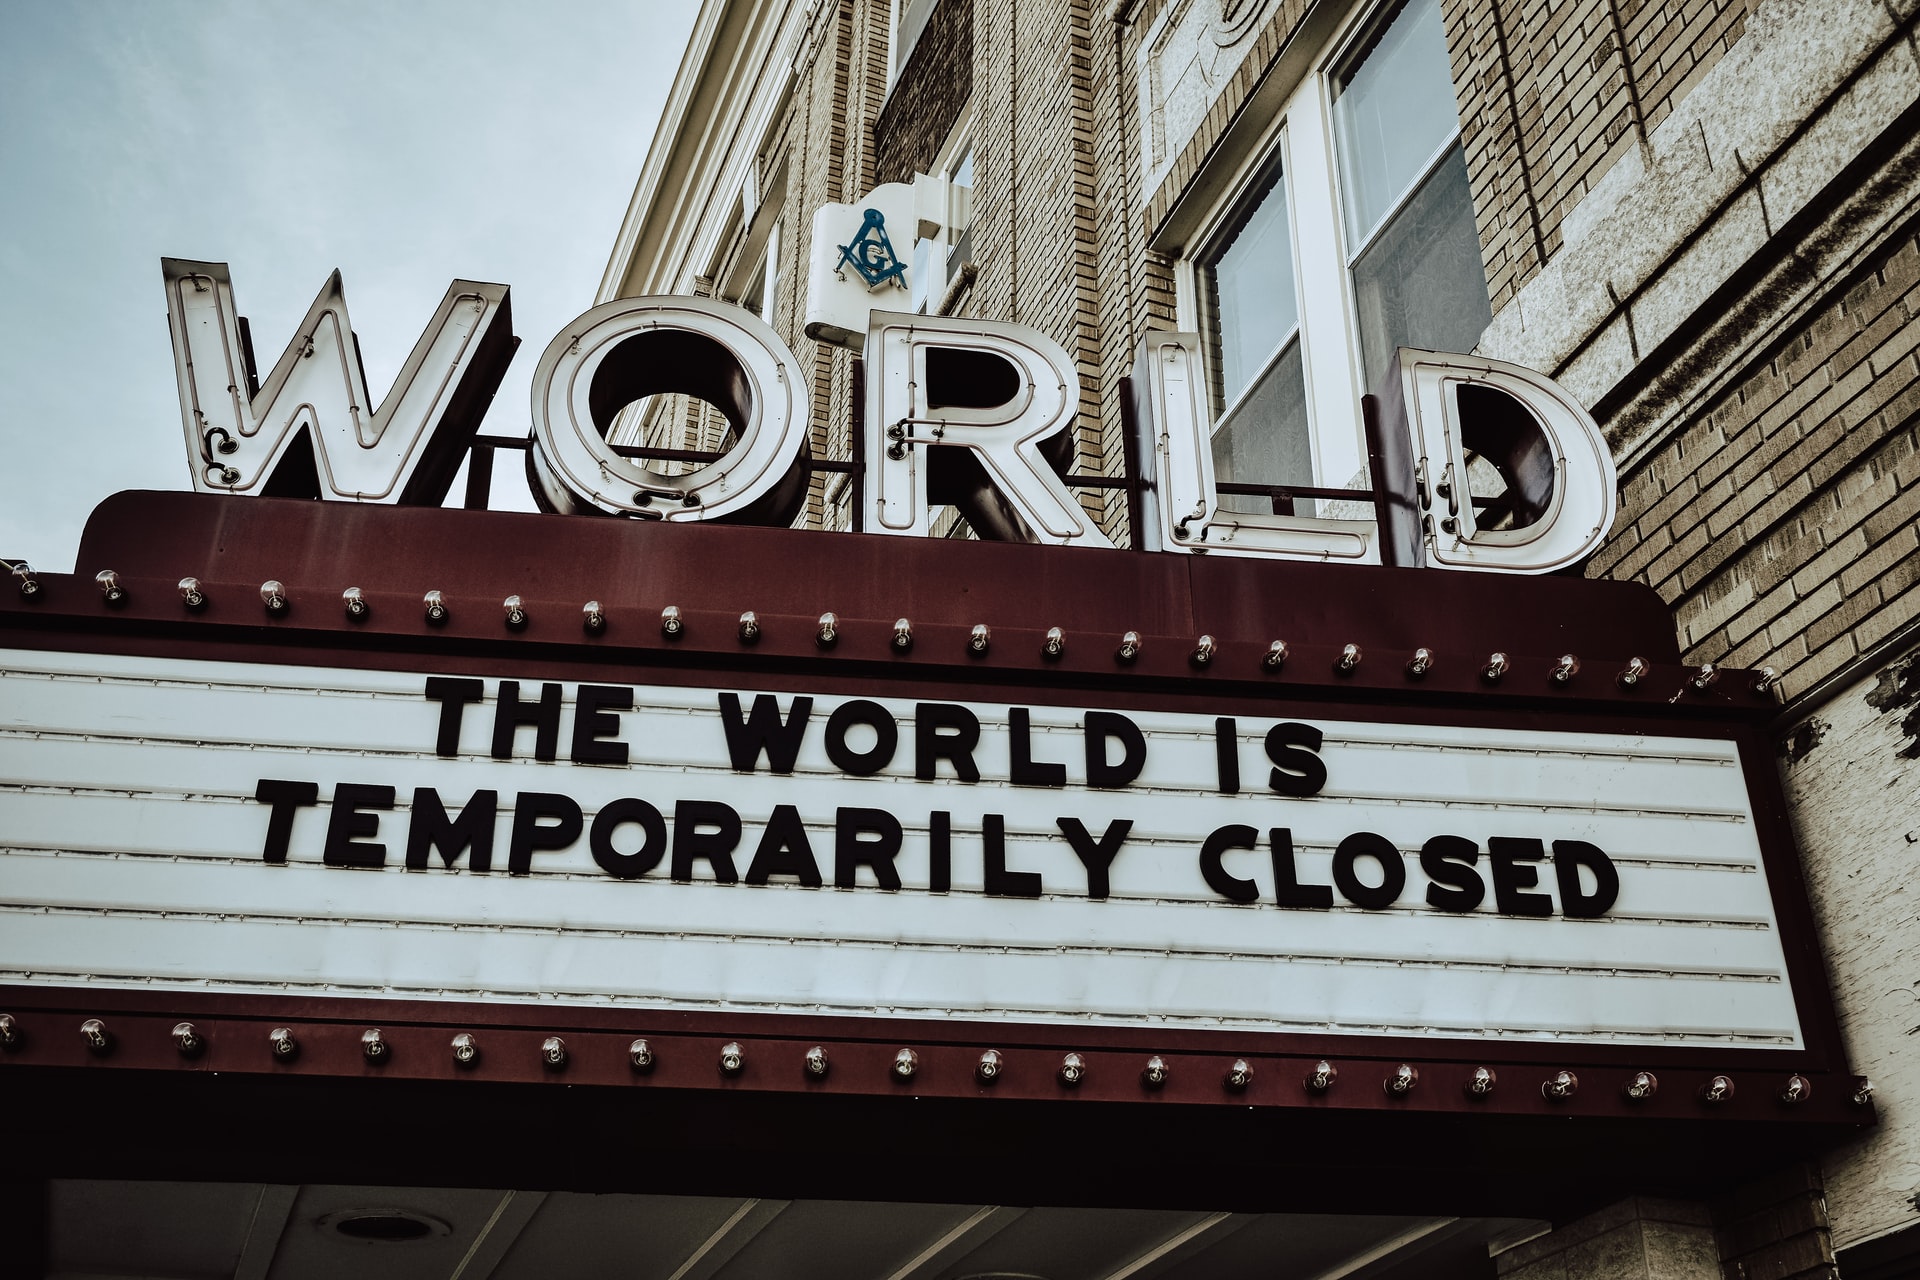 Schild mit Aufschrift: "The world is temporarily closed"